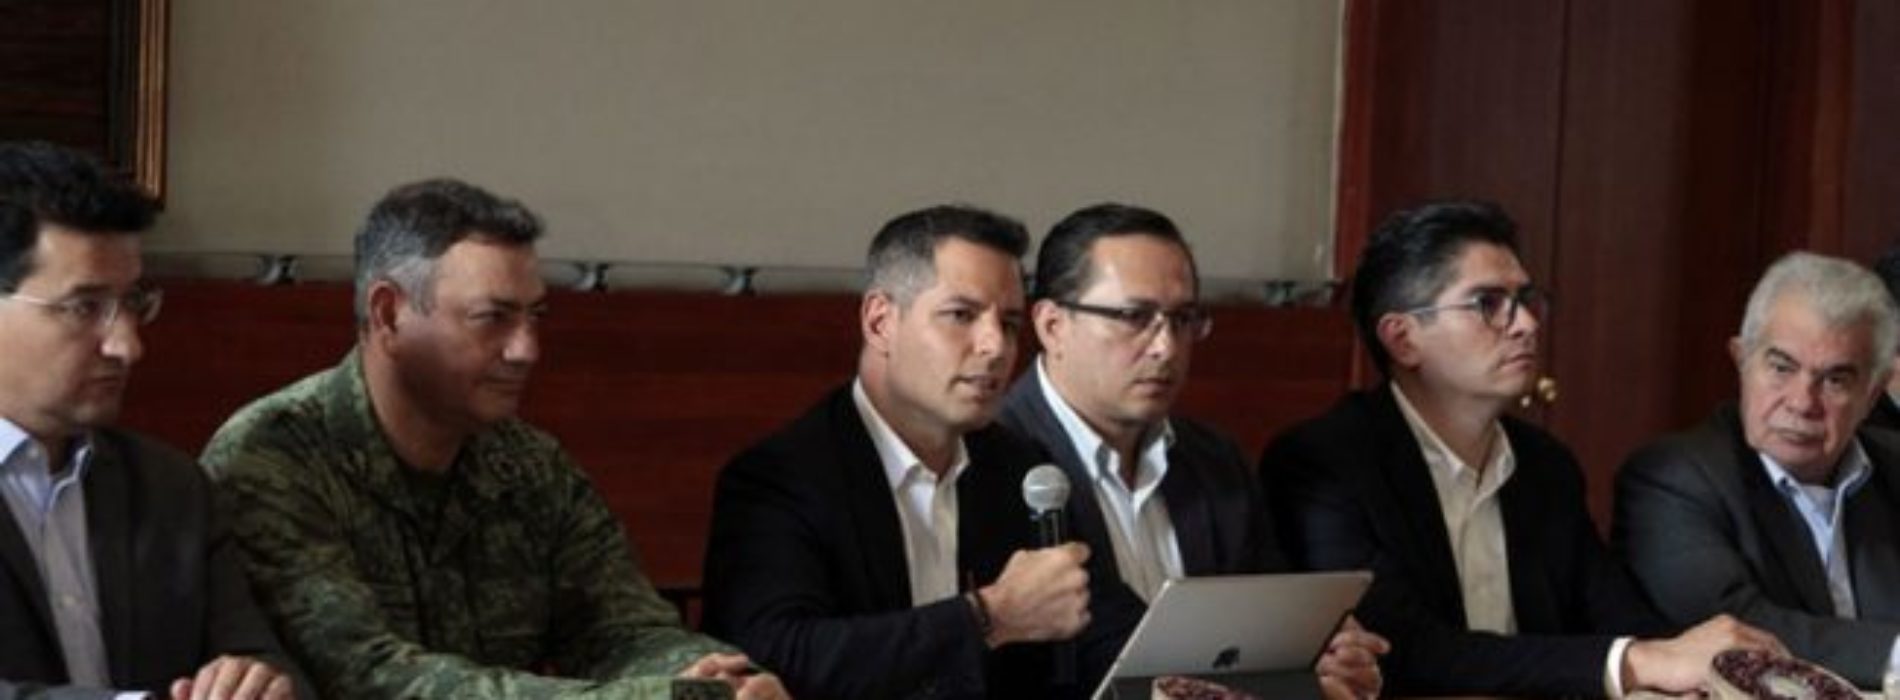 Refuerza Gobierno de Oaxaca seguridad en el marco del
proceso electoral del próximo 1 de julio